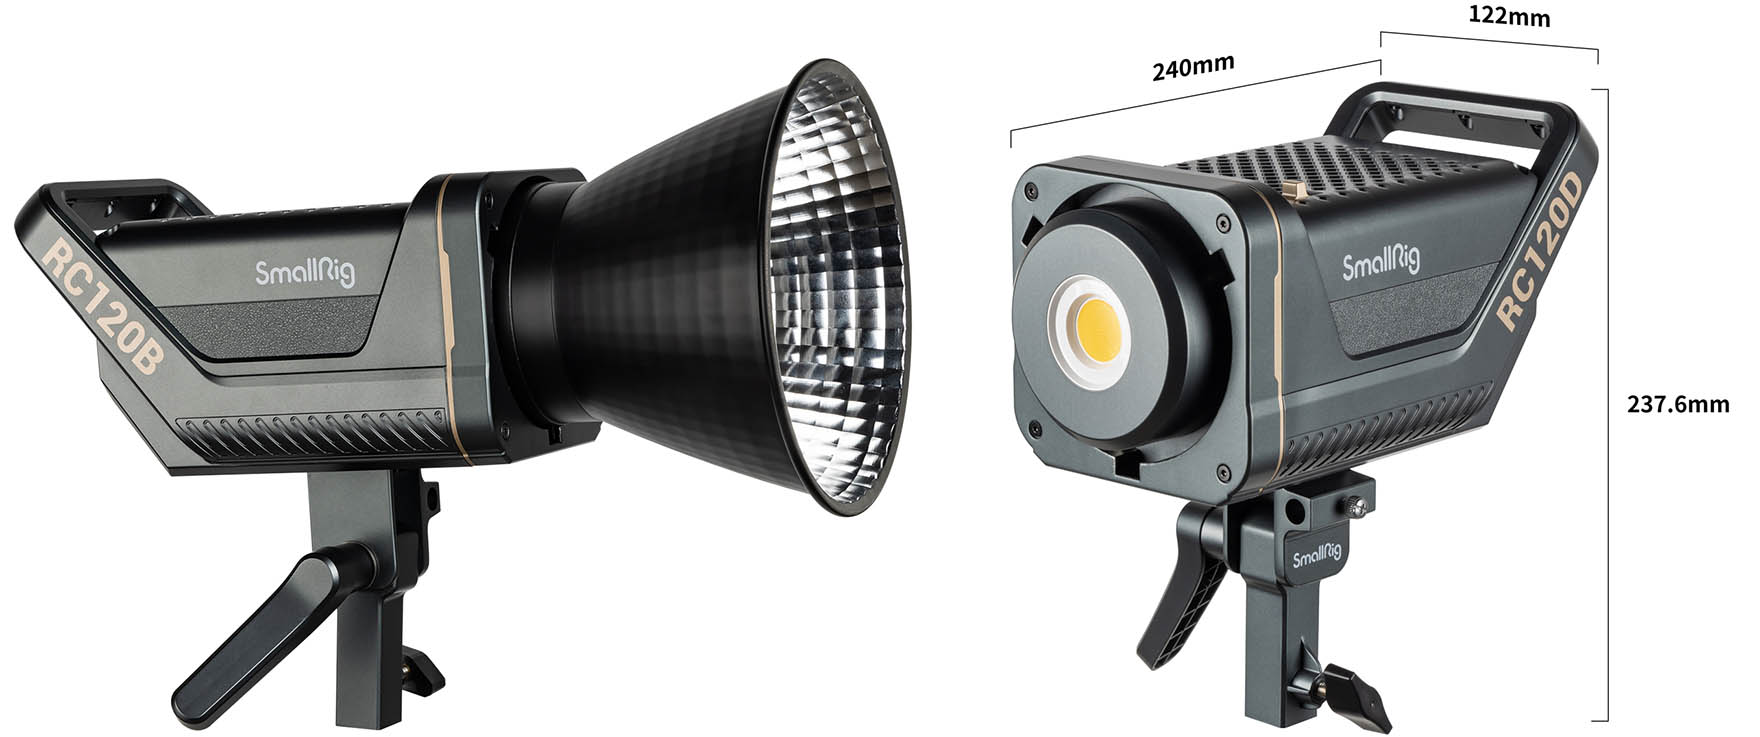 SmallRig RC120D und B: leuchtstarke, farbgenaue LED-Leuchten mit App -   – Tagesaktuelle Fotonews